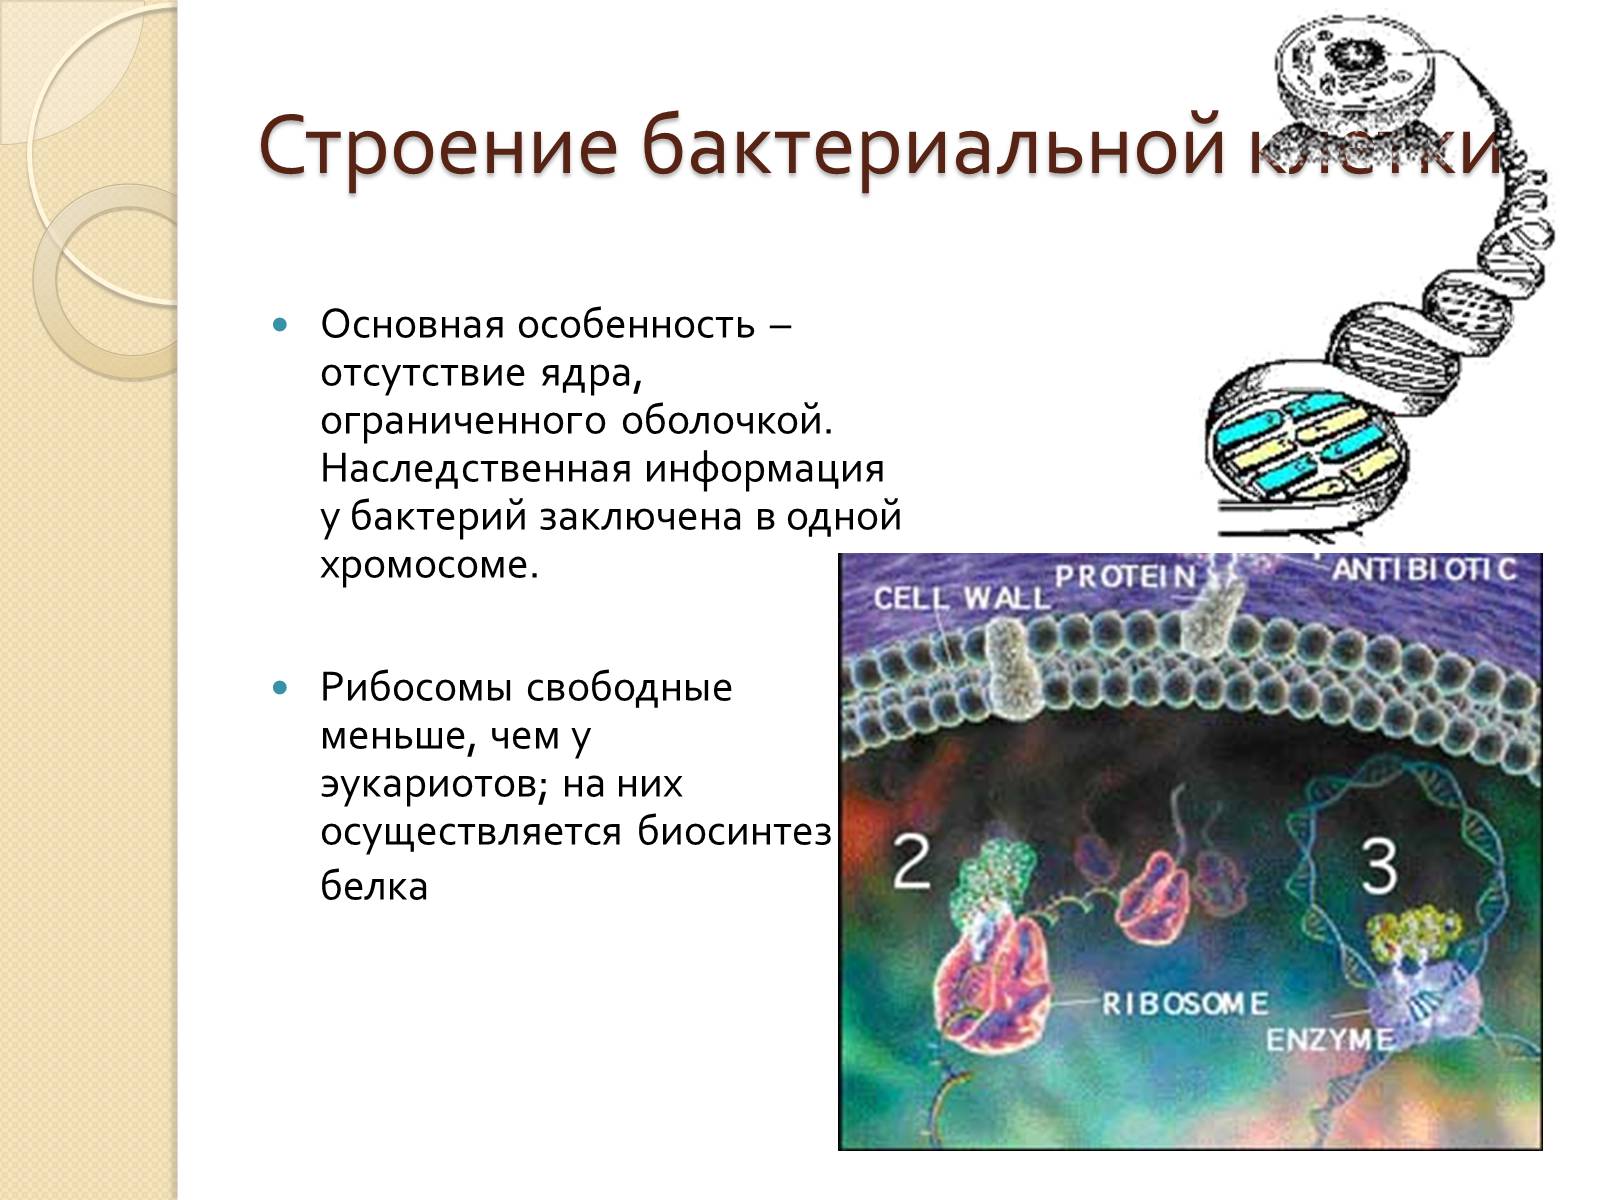 Эукариоты наследственная информация. Типы клеточной организации. Наследственная информация у бактерий. Основные типы организации клетки. Генетическая информация бактерий.